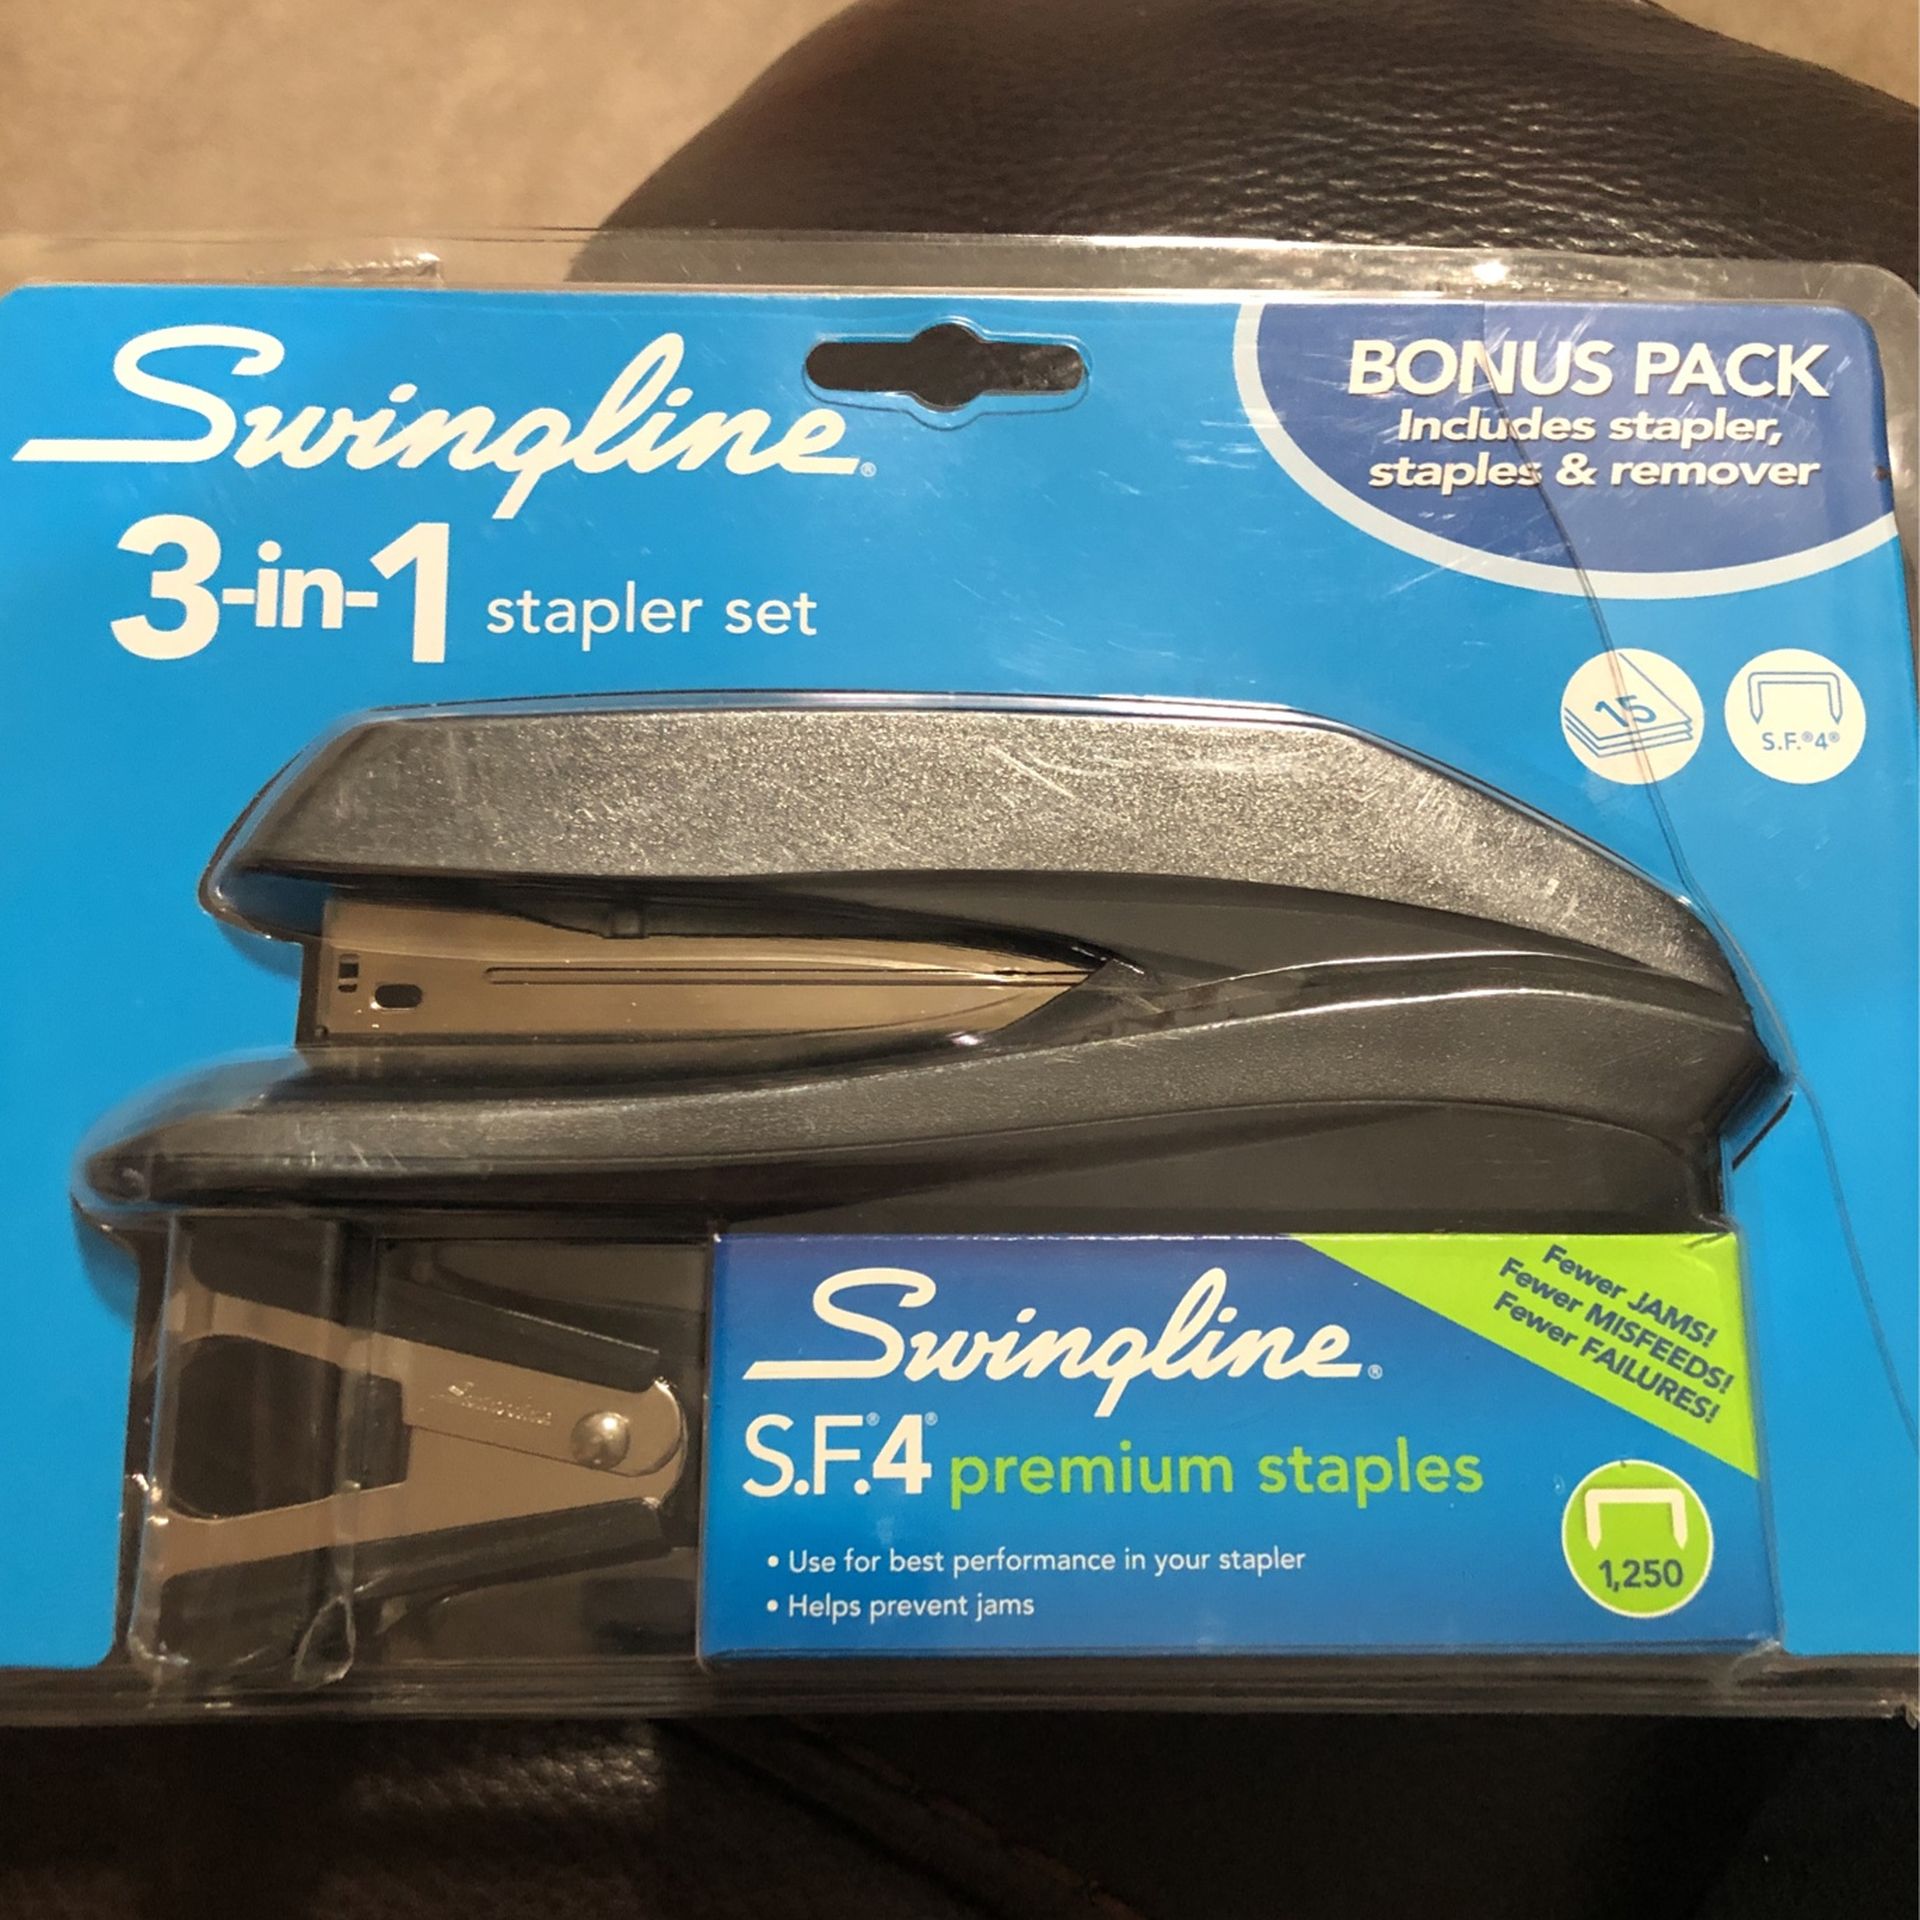 Swing line stapler set